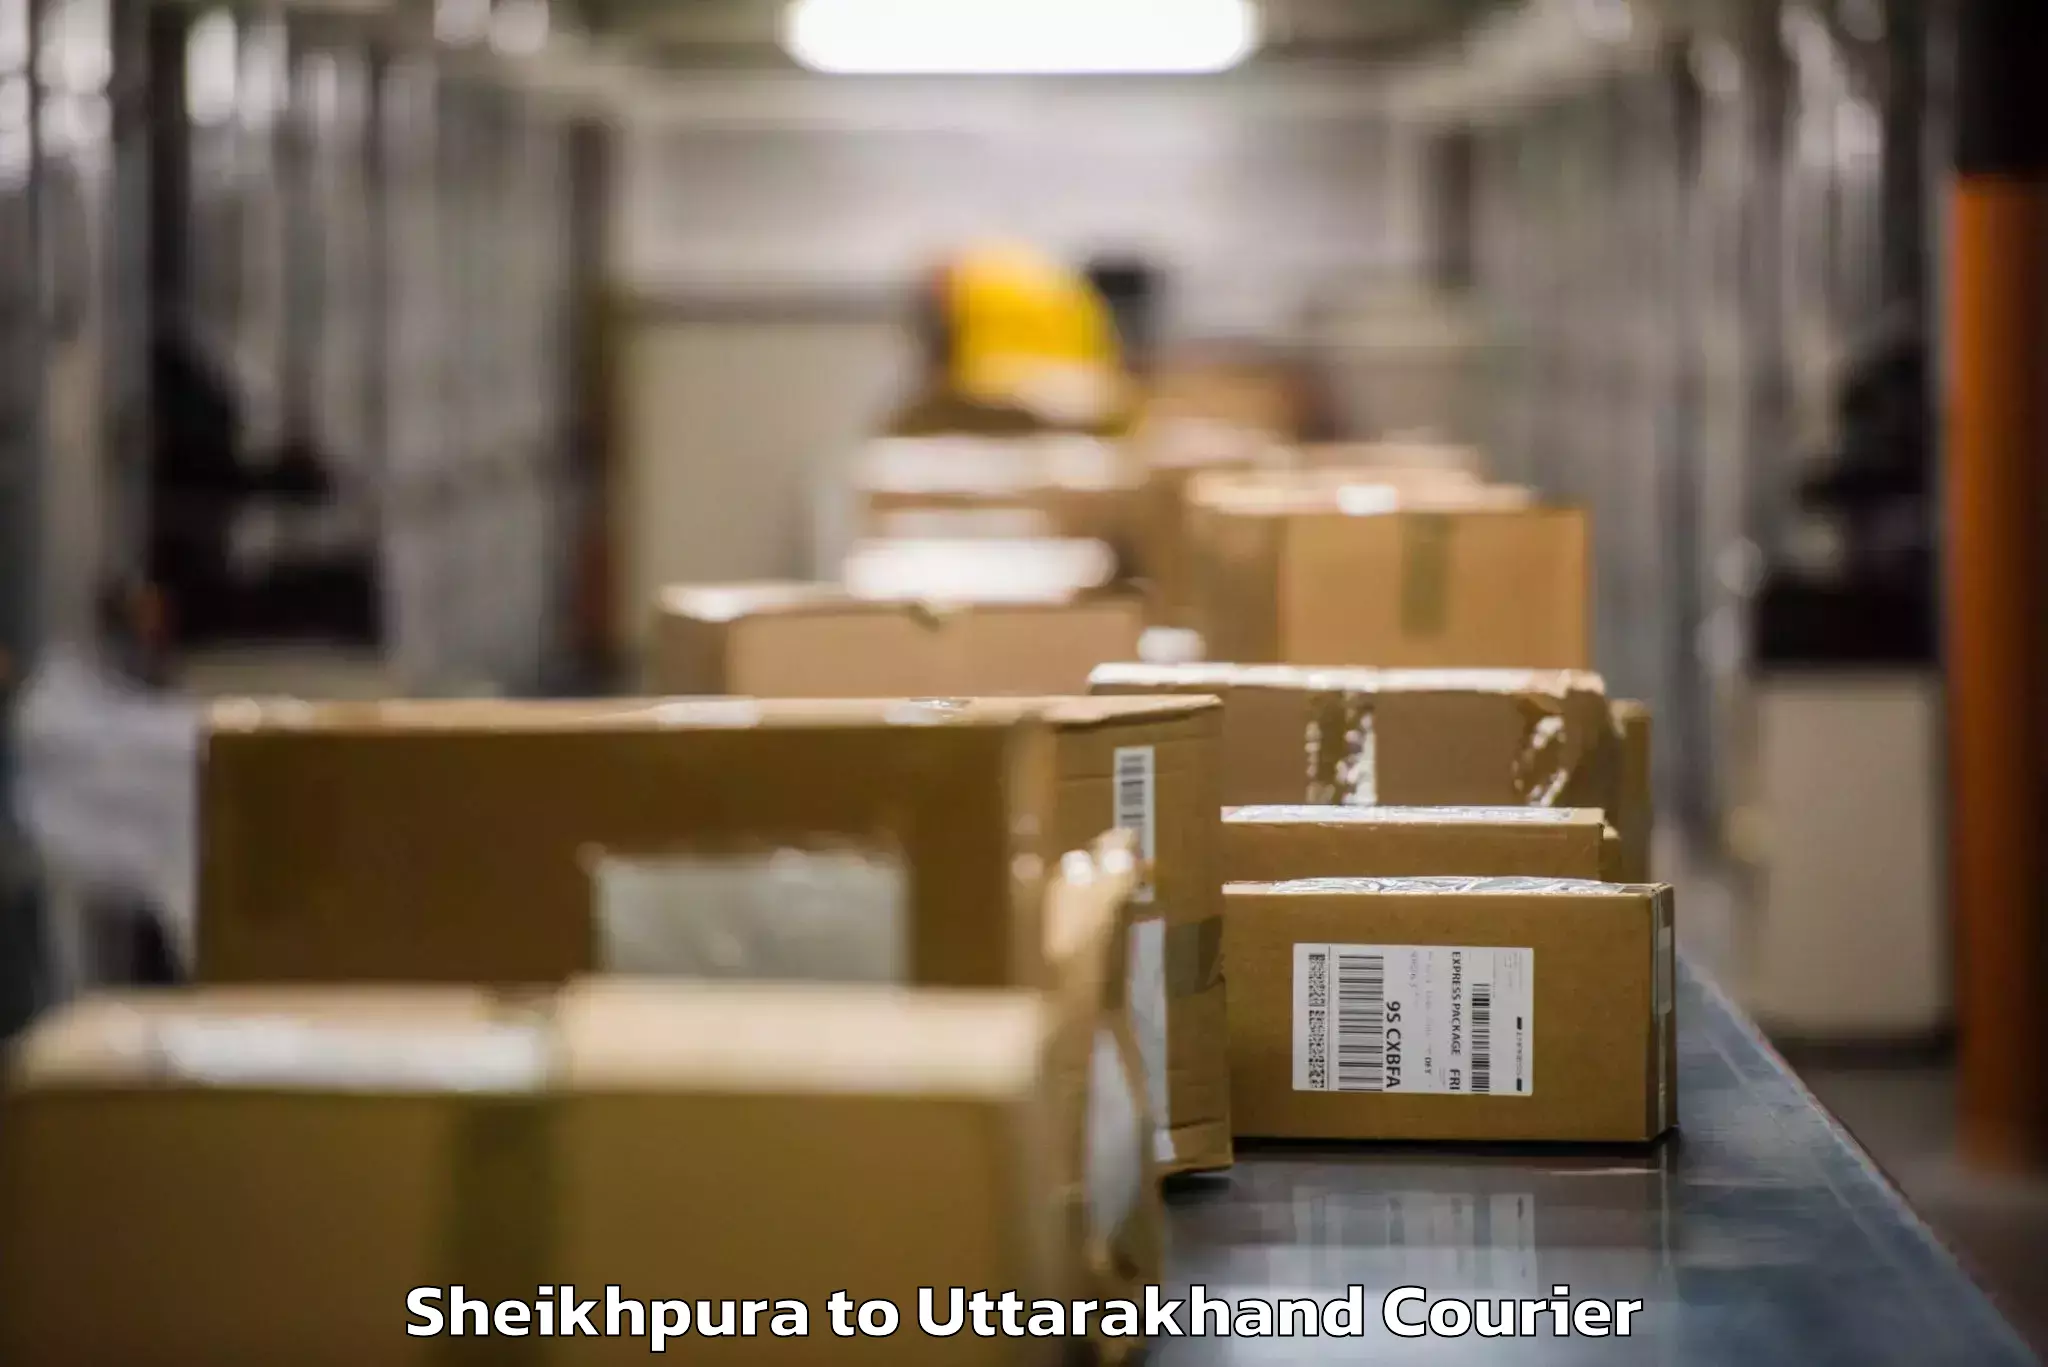 Luggage transport consulting Sheikhpura to Uttarakhand